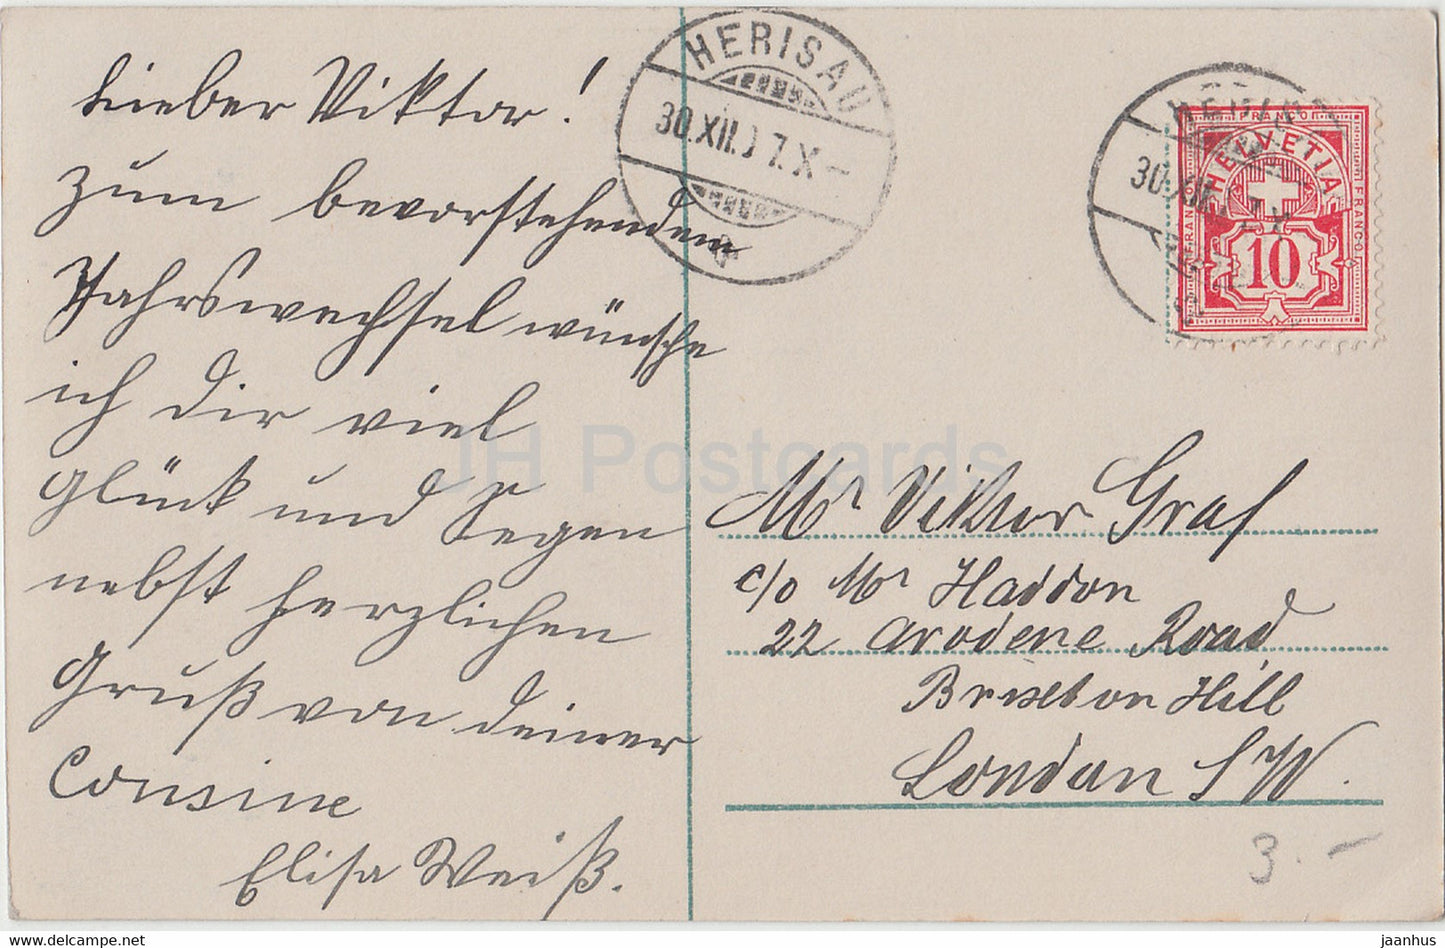 New Year Greeting Card - Herzlichen Gluckwunsch zum Neuen Jahre - horse sledge - old postcard - 1907 - Germany - used